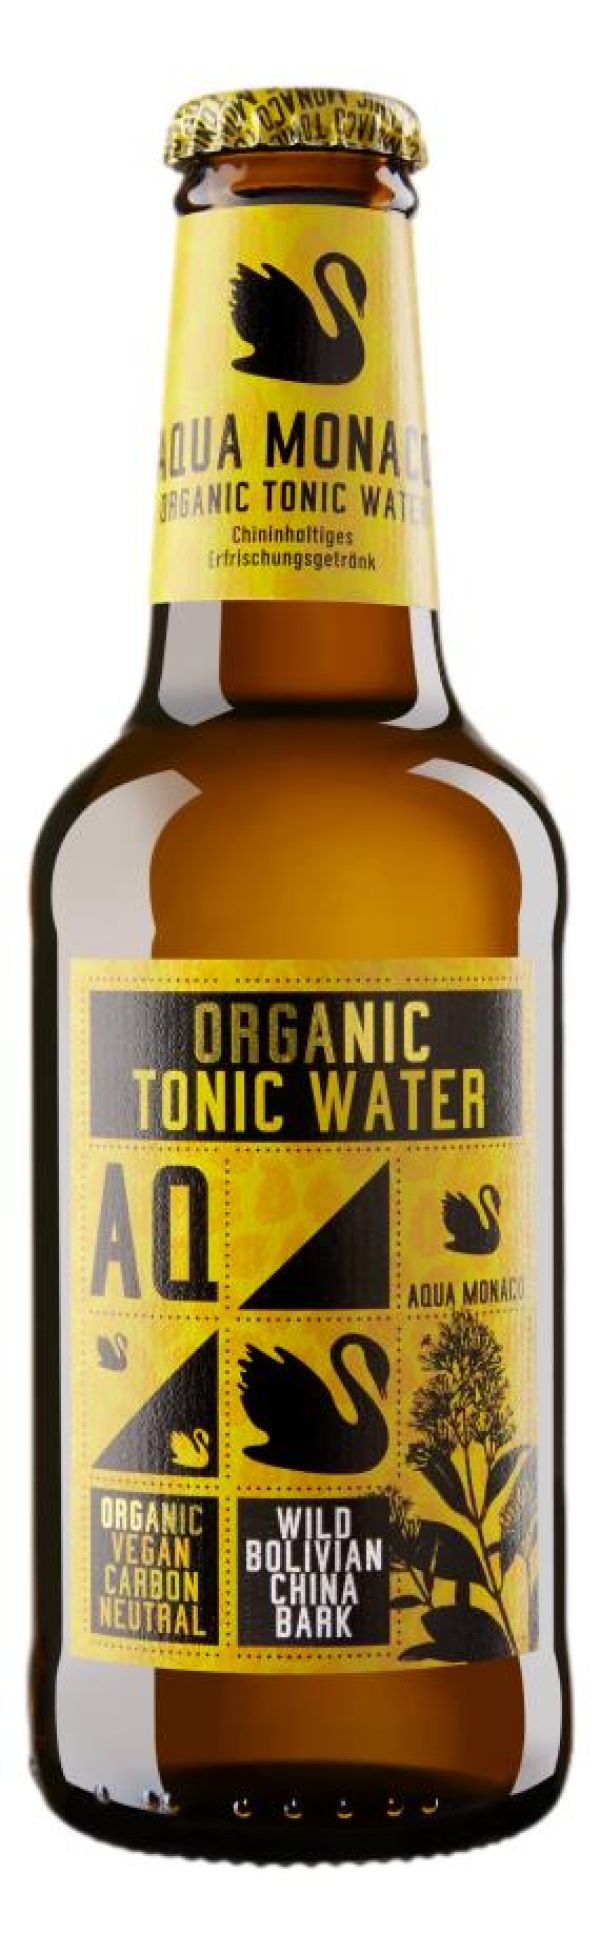 Βιολογικό Τόνικ (Organic Tonic Water)